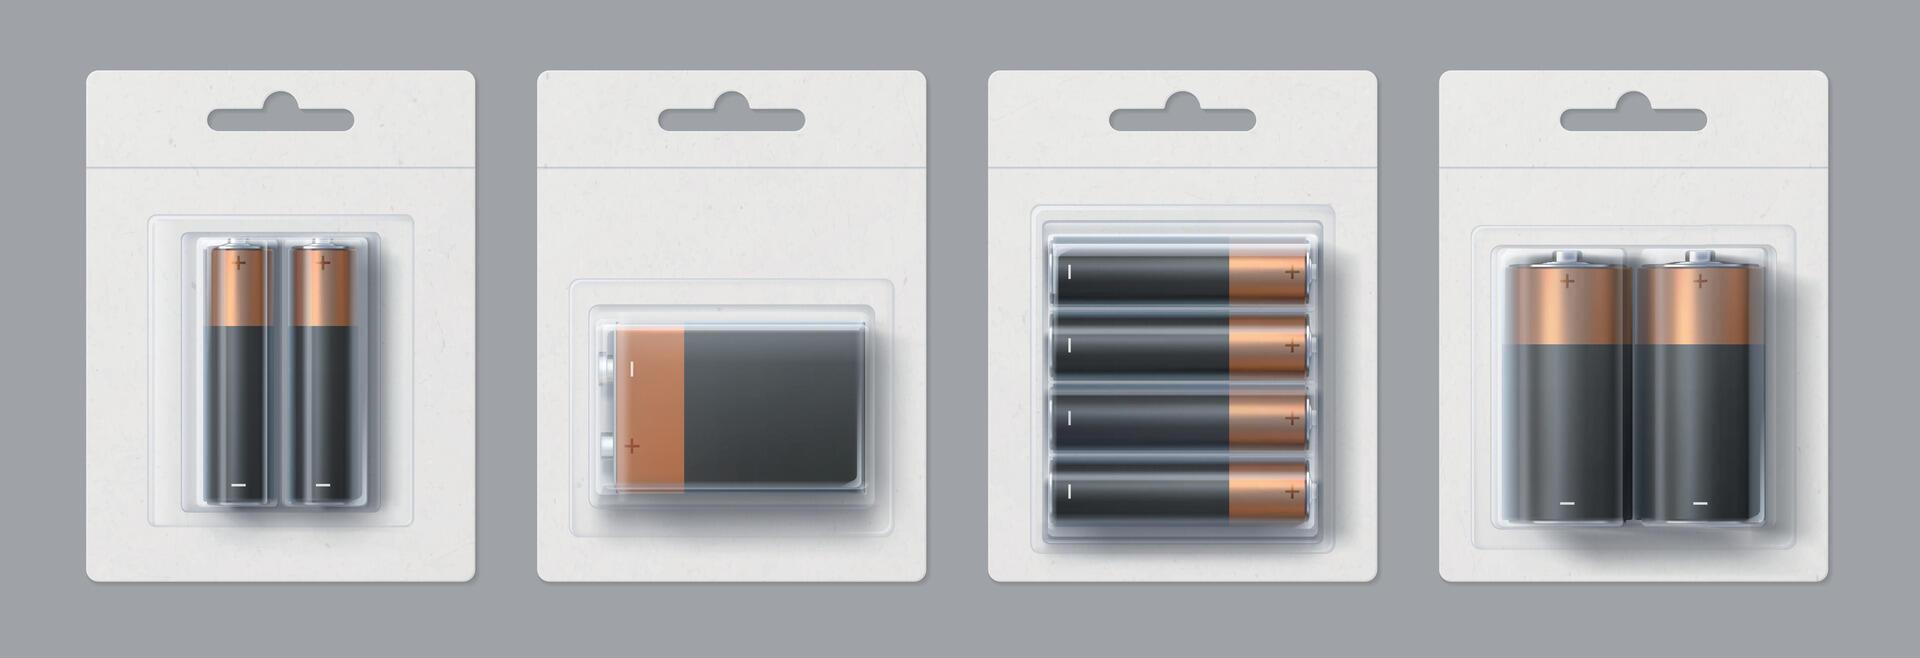 réaliste alcalin batterie Taille paquets maquette conception. noir et or métallique électrique piles dans transparent packs vecteur modèle ensemble